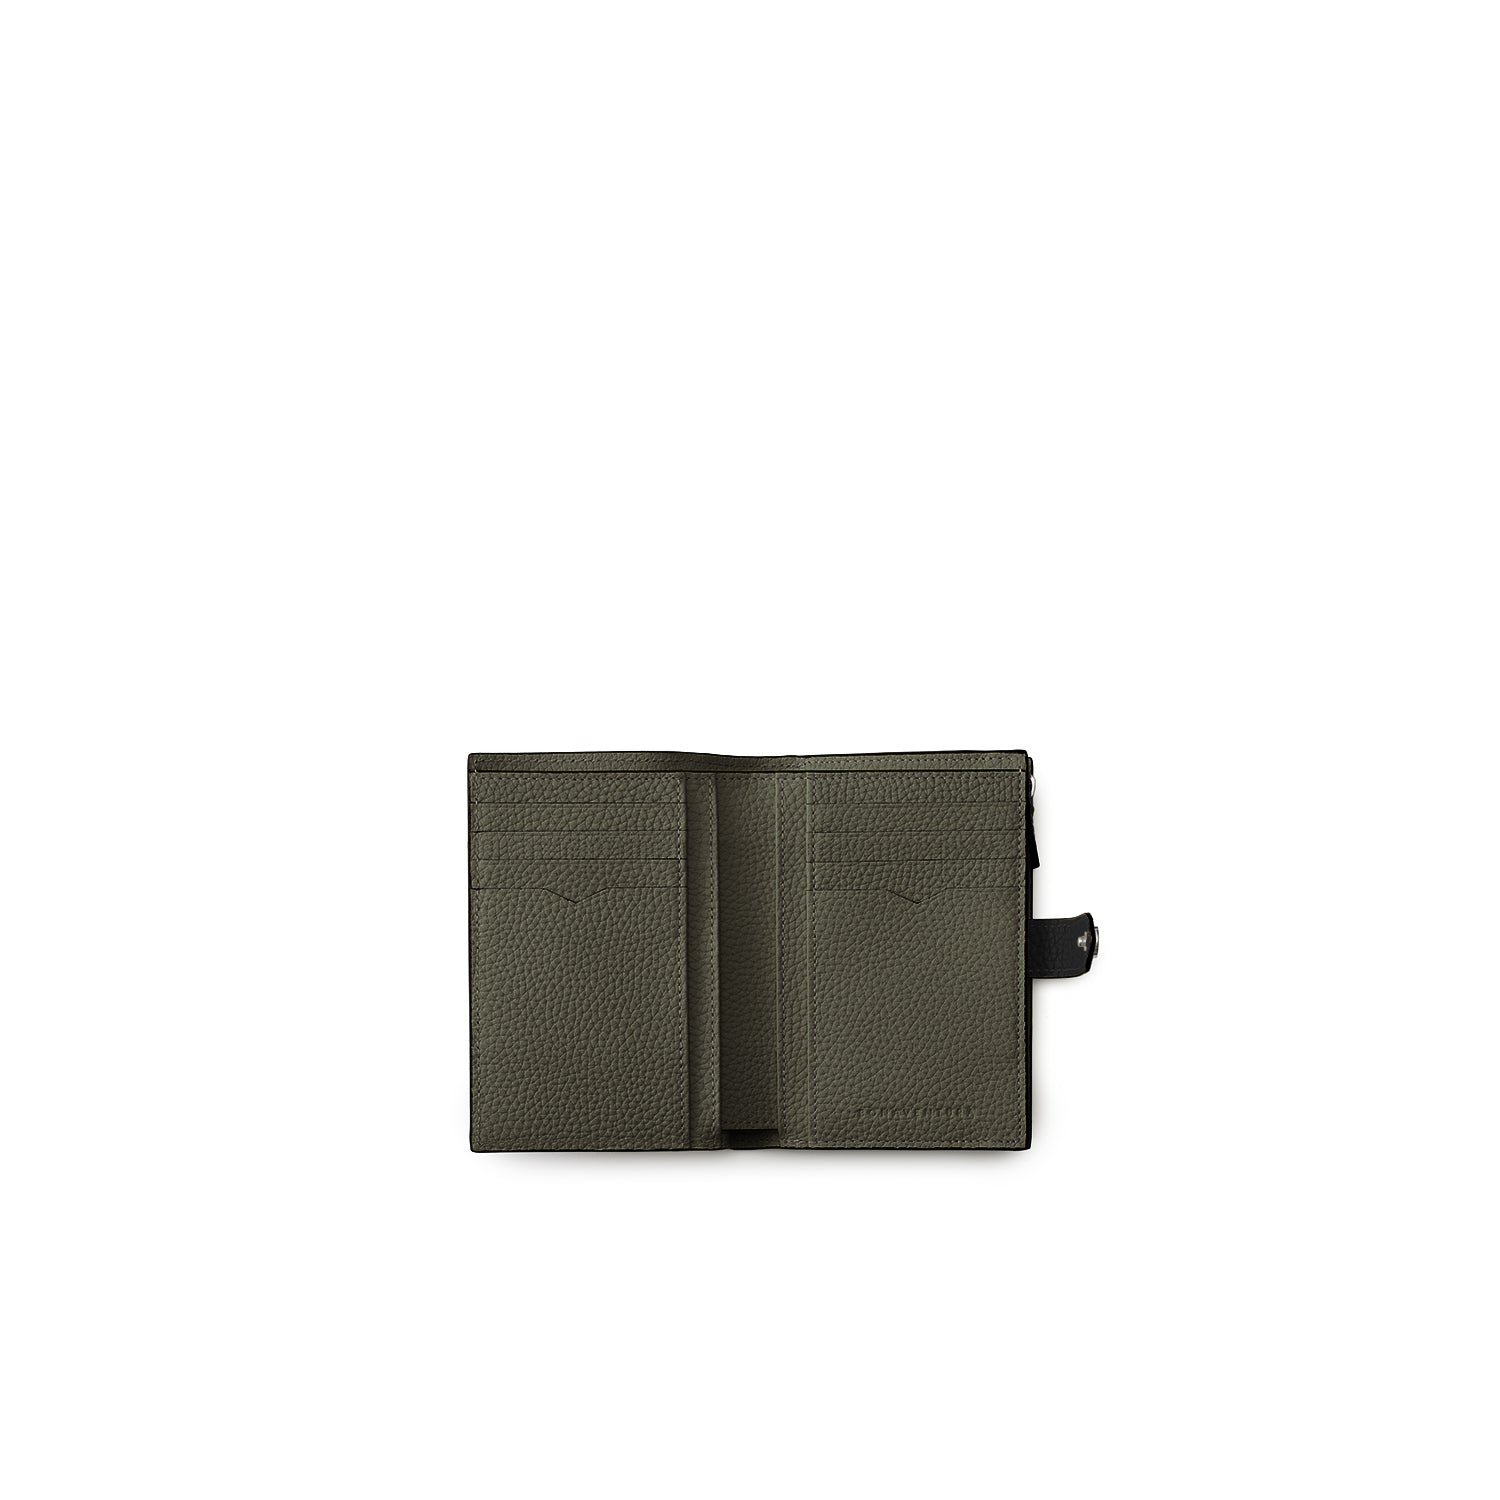 【新品未使用 正規店購入】 BONAVENTURA マルチウォレット ブラック収納力抜群のコンパクトなお財布